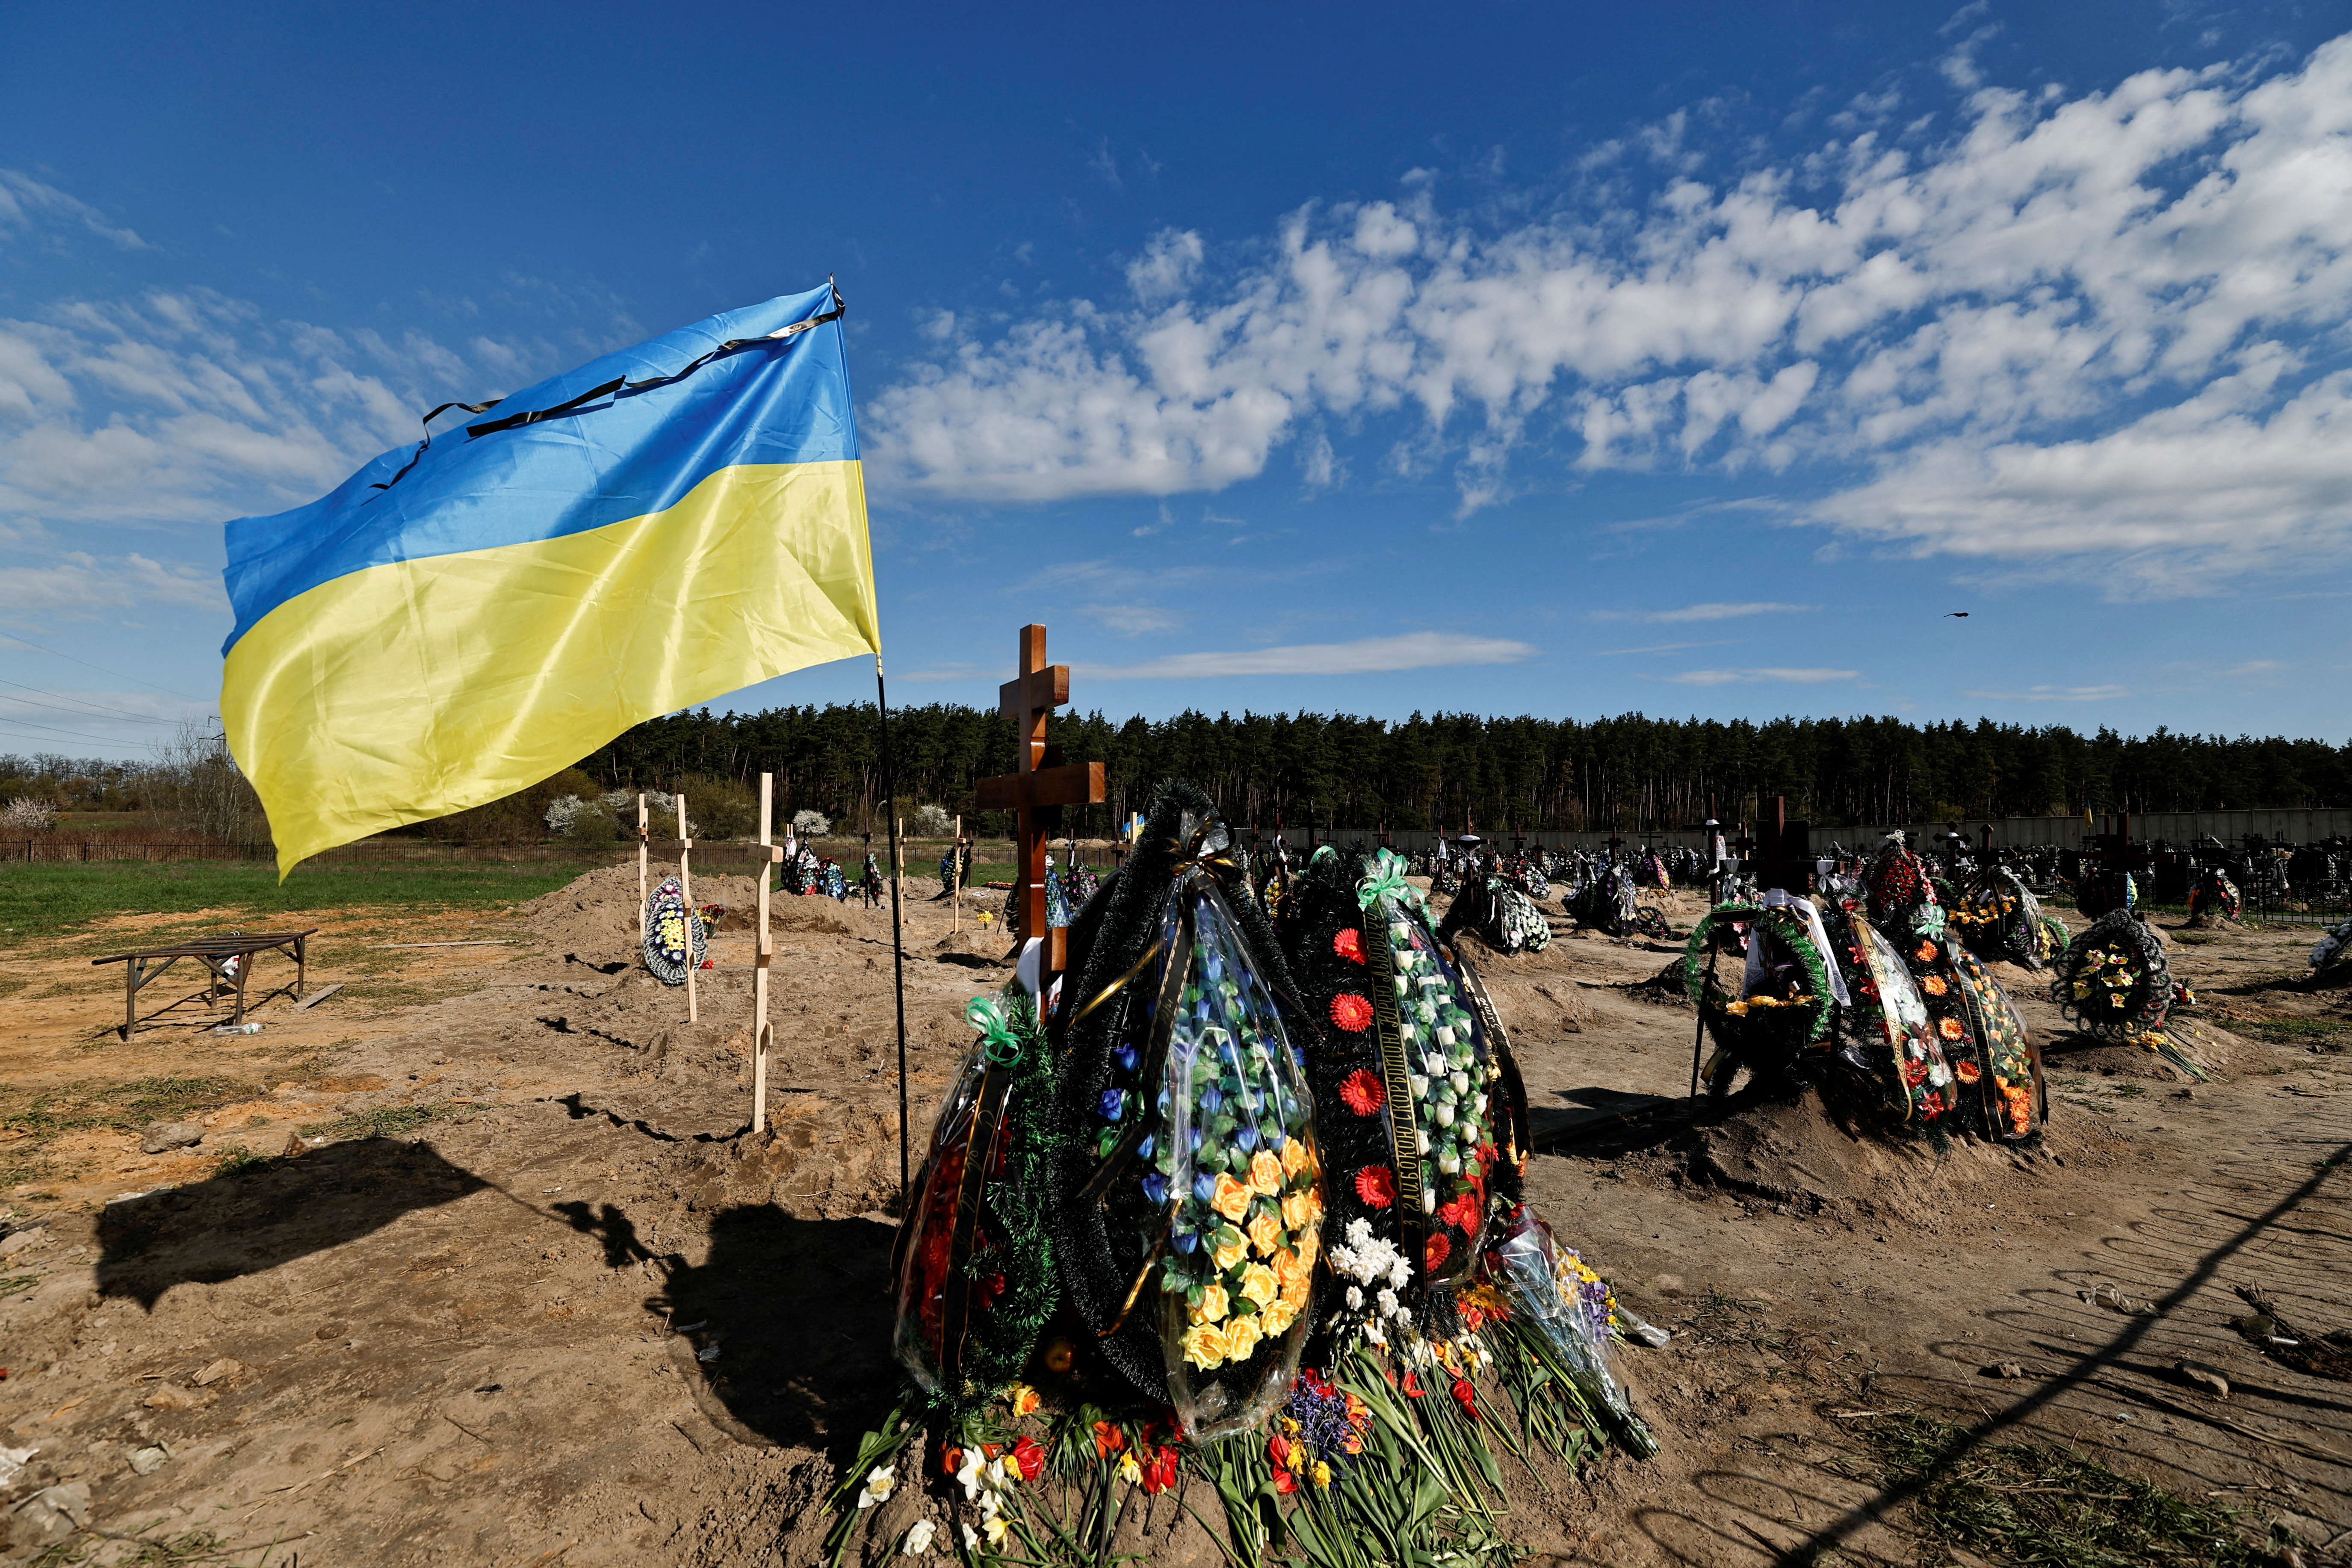 FOTO DE ARCHIVO: La bandera de Ucrania se ve junto a las nuevas tumbas de las personas asesinadas durante la invasión rusa de Ucrania, en un cementerio en la región de Bucha Kyiv, Ucrania 28 de abril de 2022. REUTERS/Zohra Bensemra